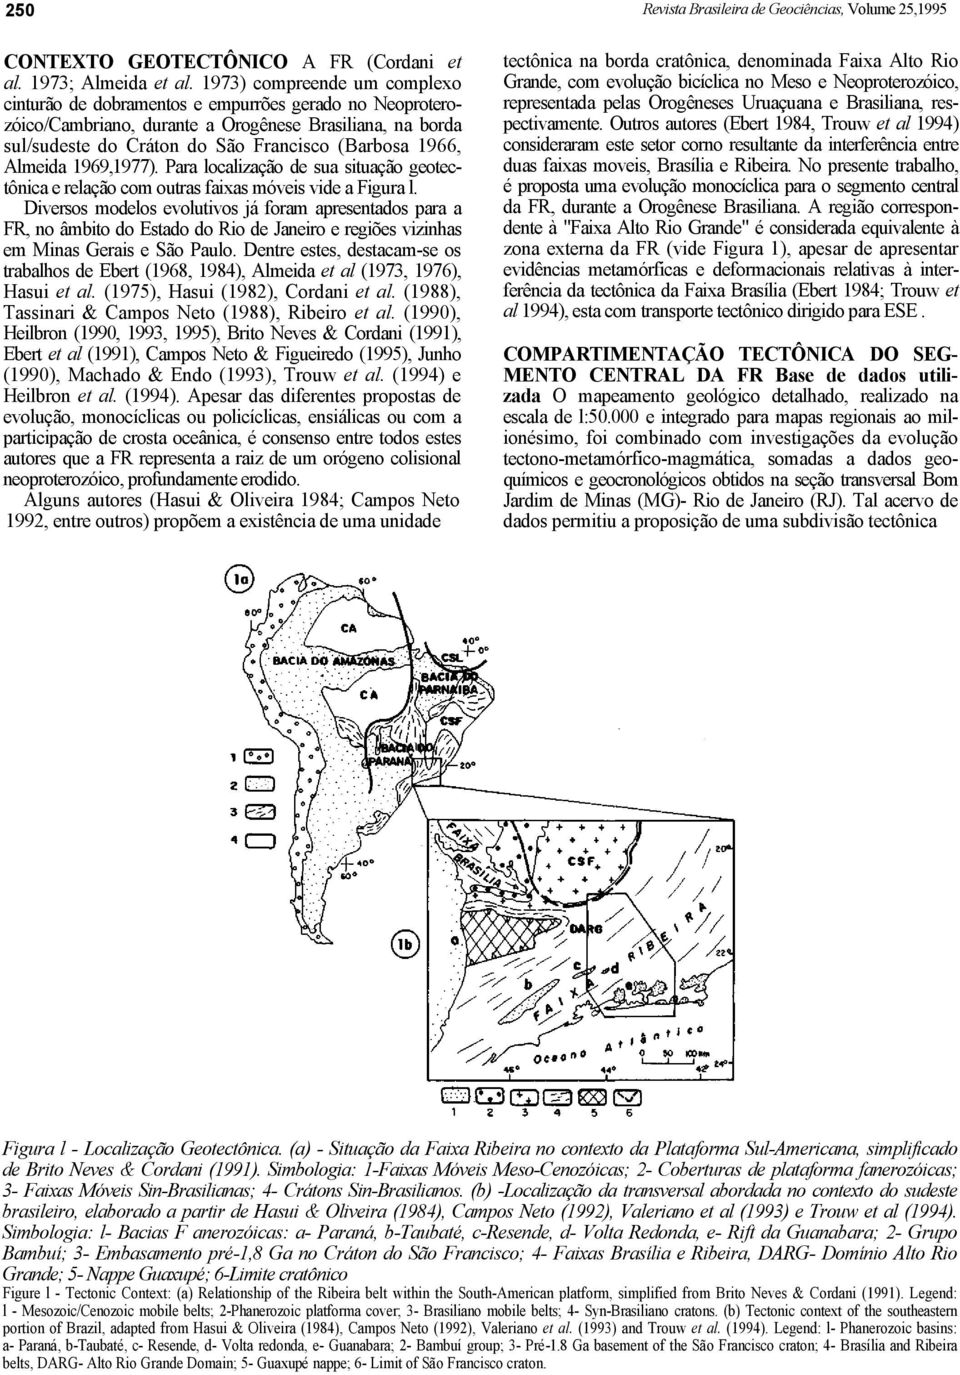 Almeida 1969,1977). Para localização de sua situação geotectônica e relação com outras faixas móveis vide a Figura l.